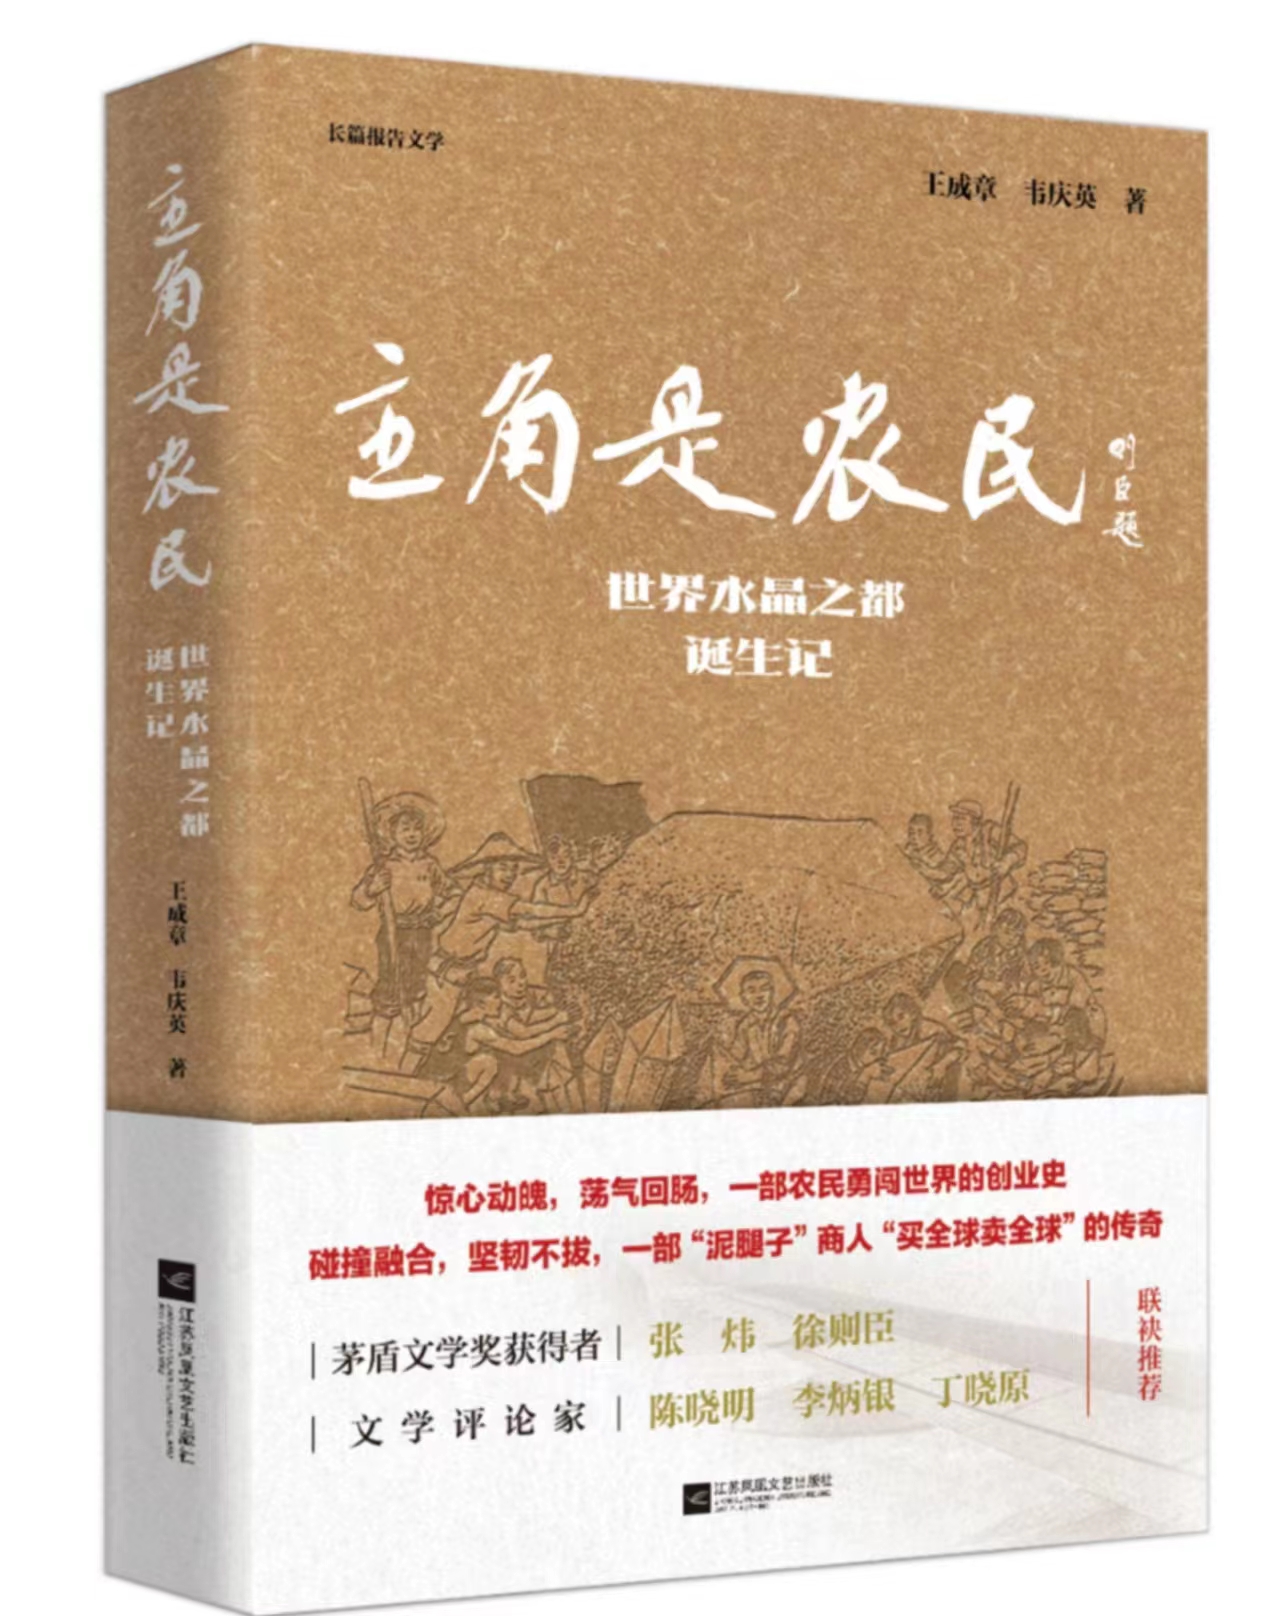 卢明清:一部激动人心的新时代创业史——读长篇报告文学《主角是农民》